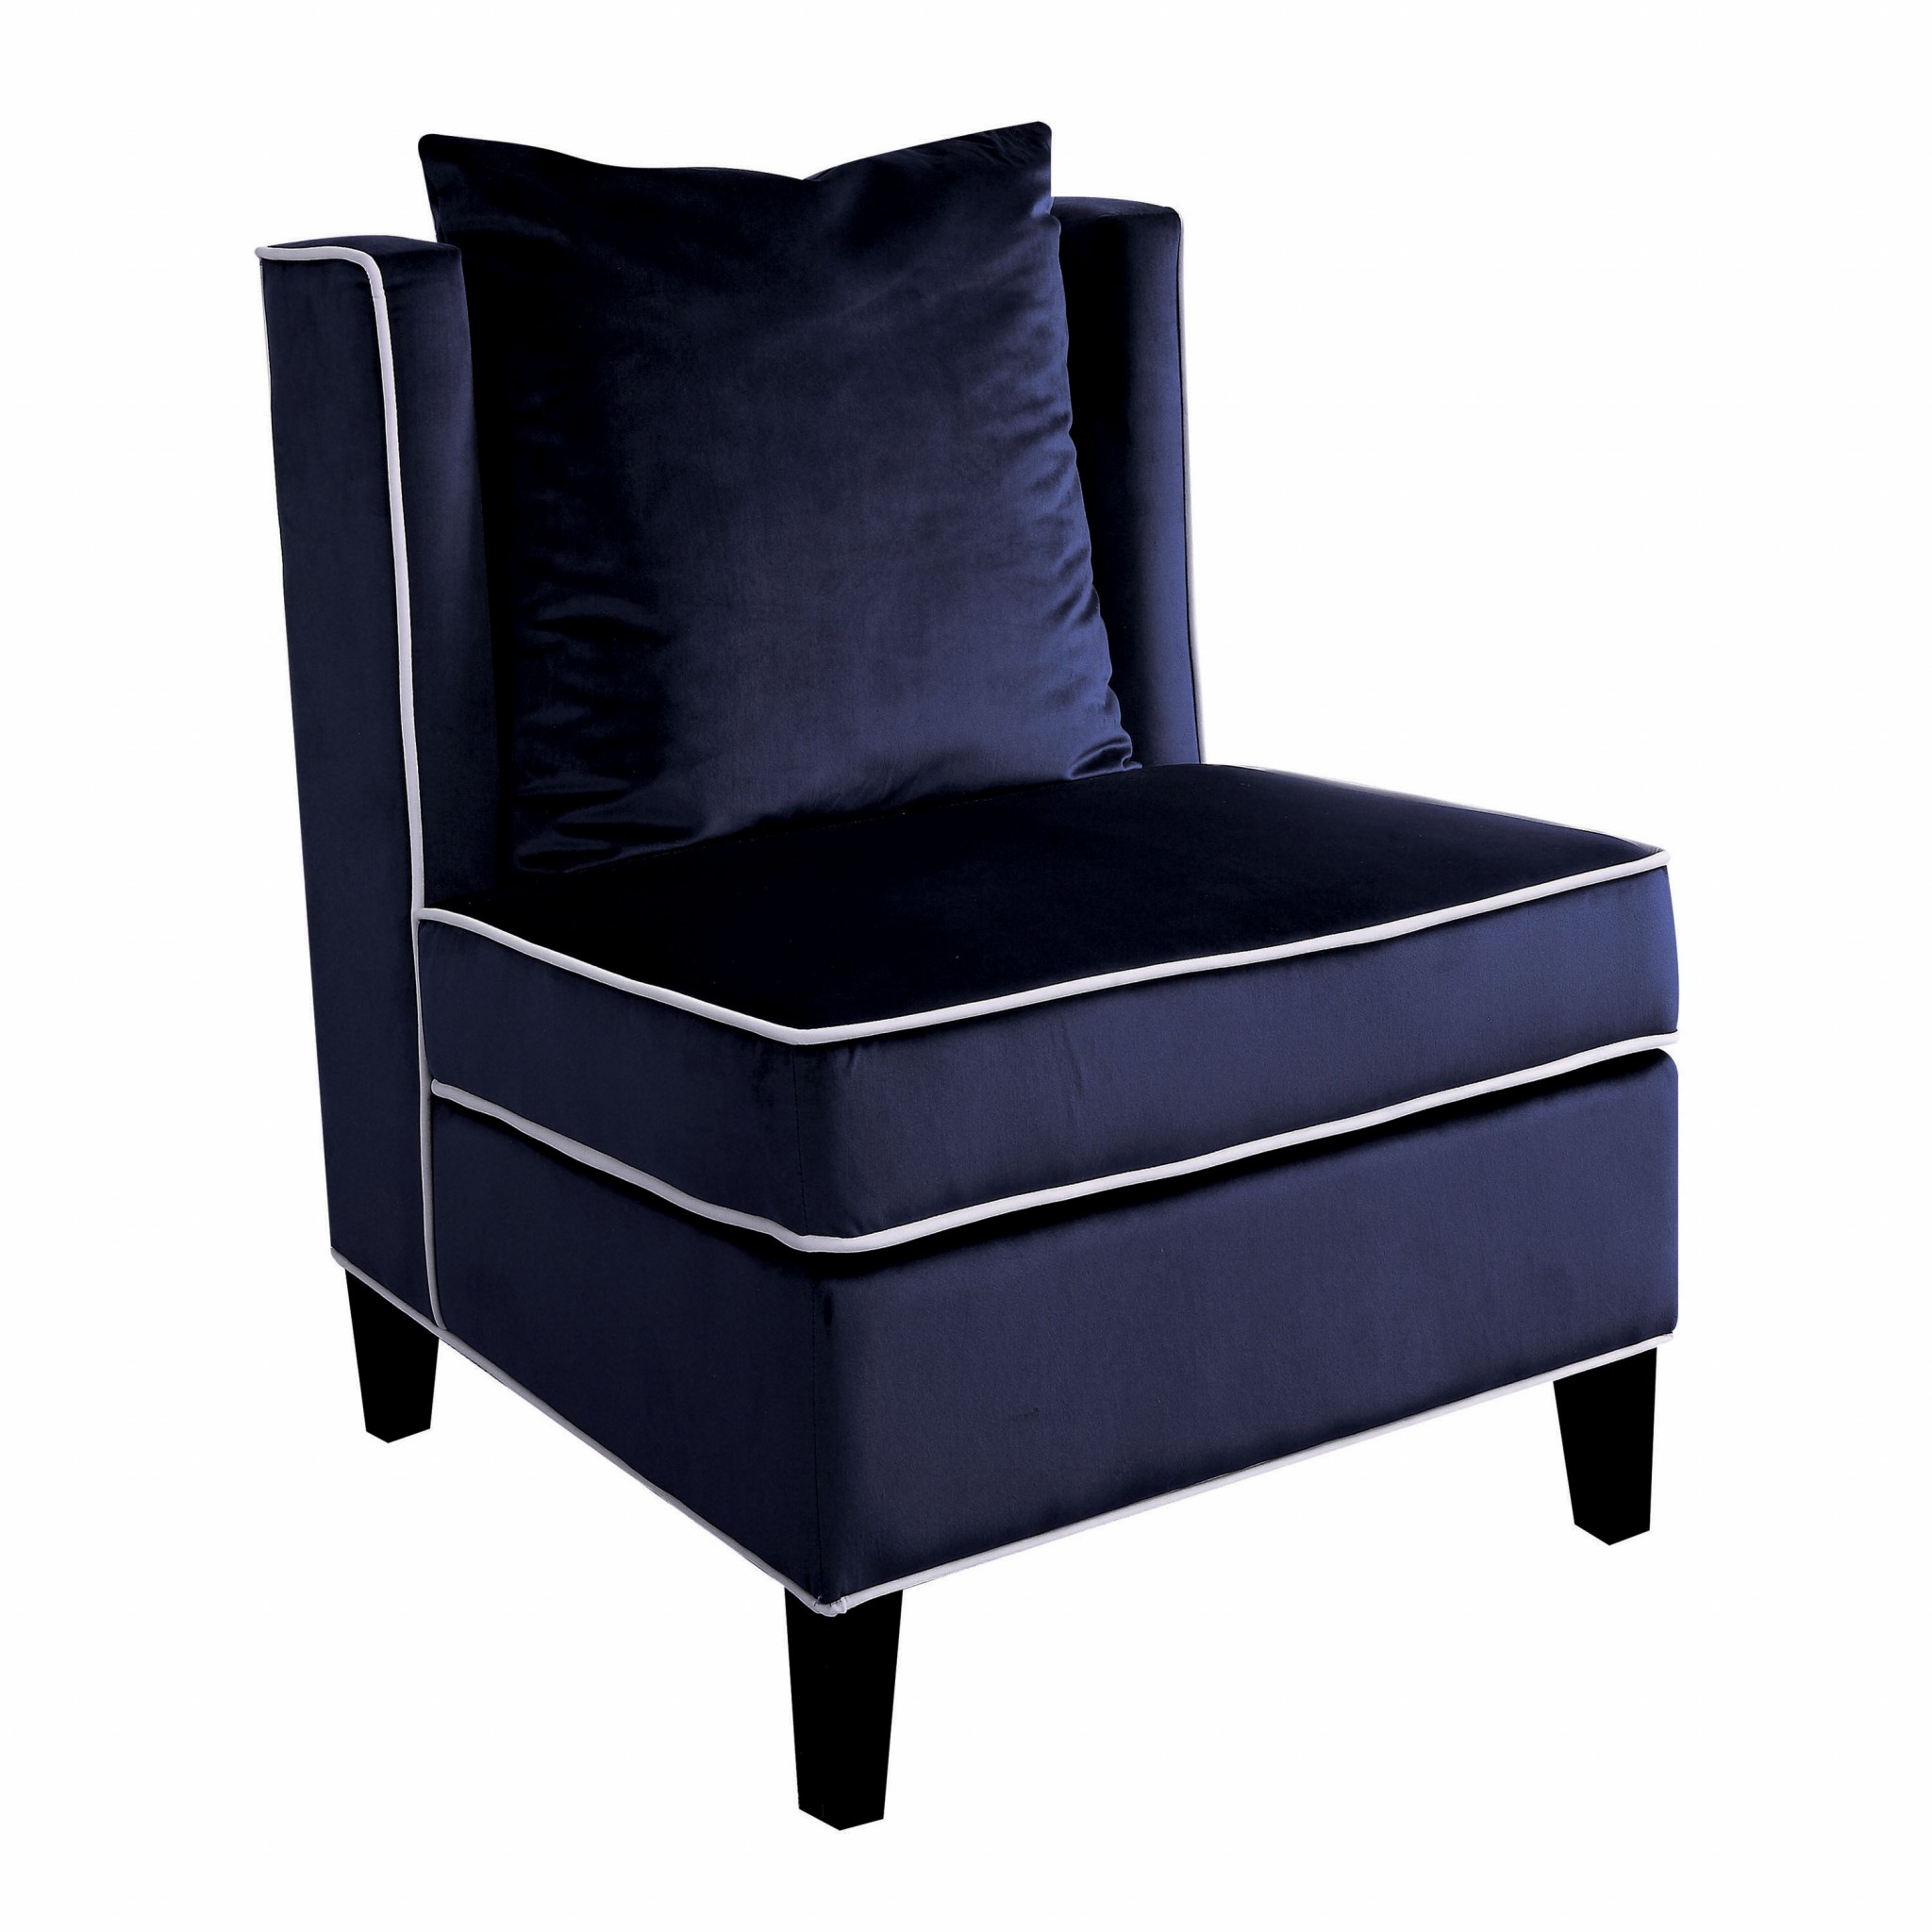 29" X 32" X 39" Dark Blue Velvet Accent Chair